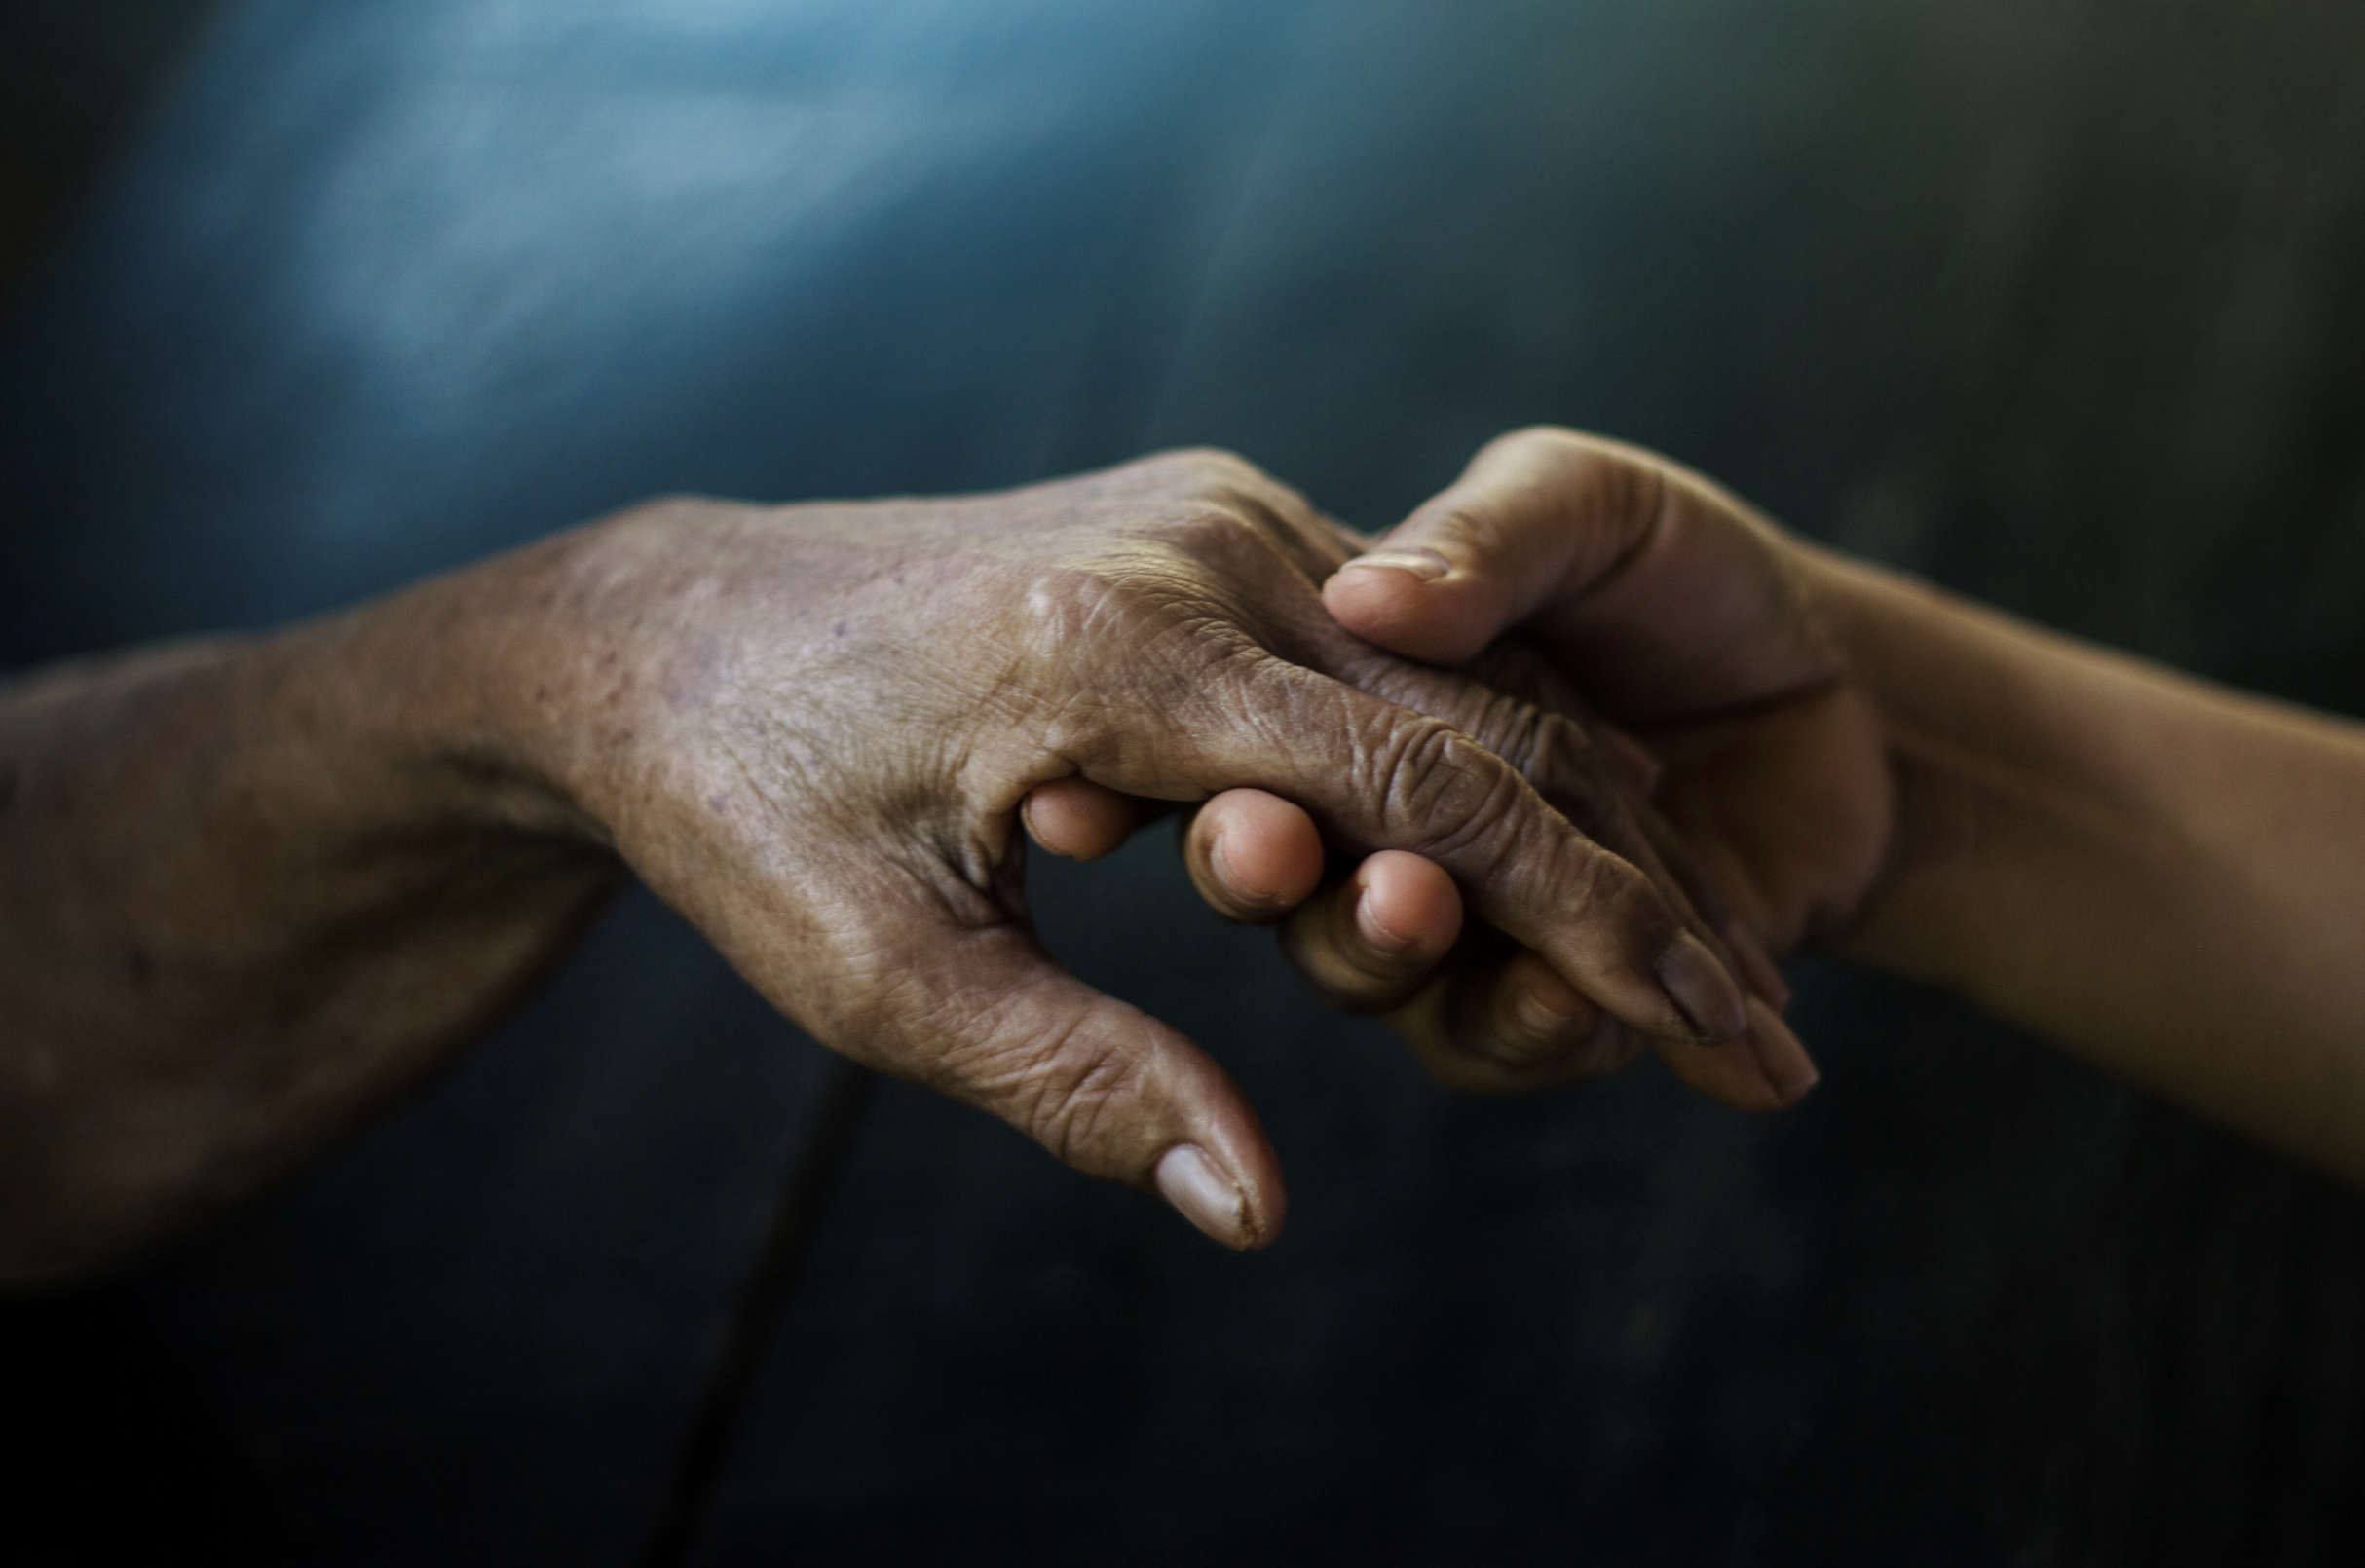     2000 malades de Parkinson en Martinique : « l'activité physique lui fait du bien »

